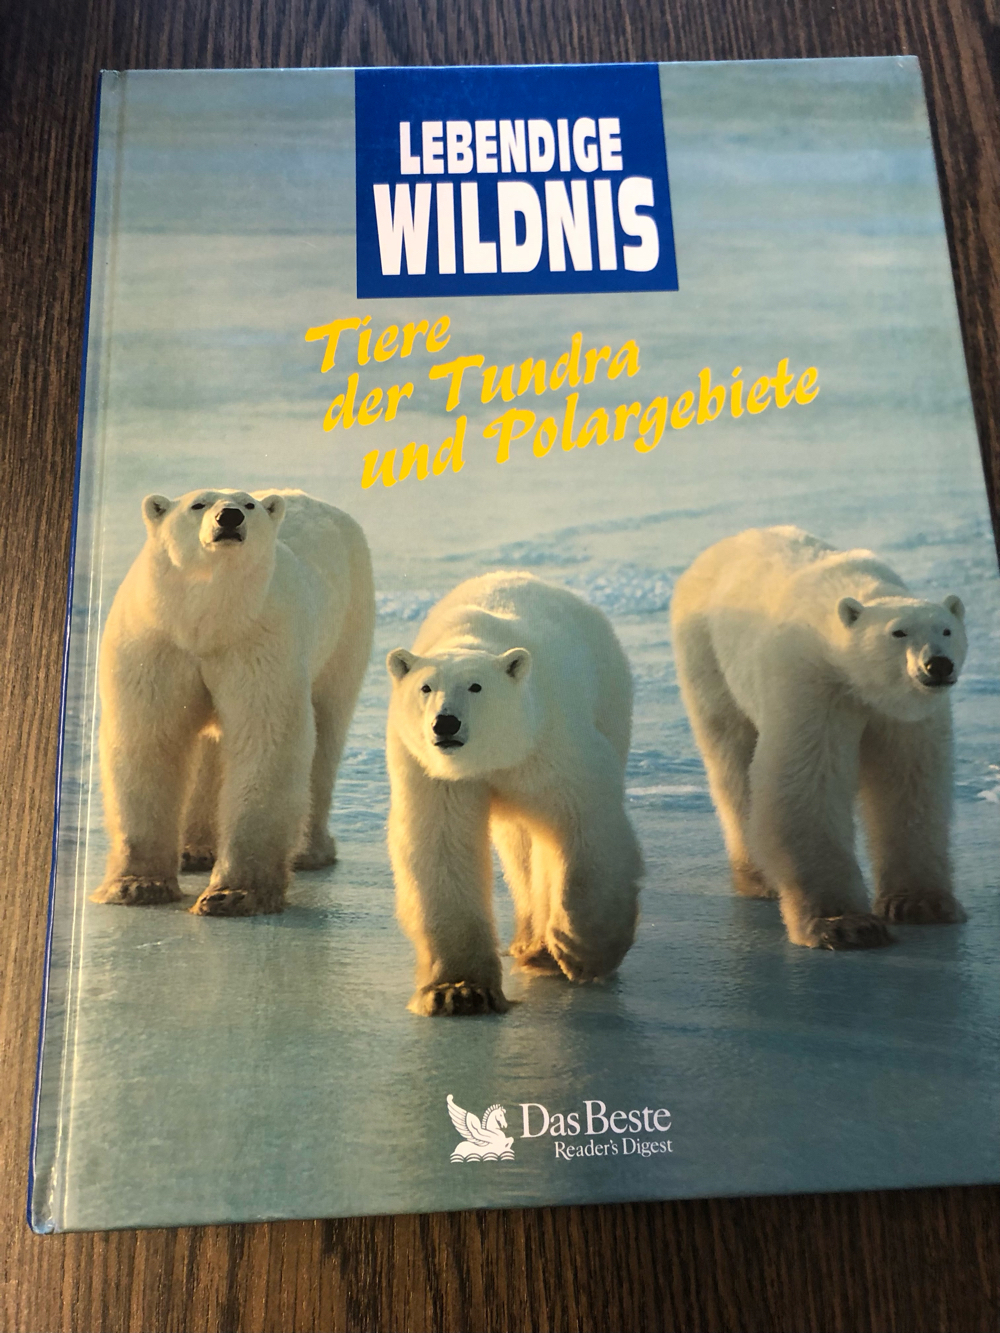 Tiere der Tundra und Polargebiete